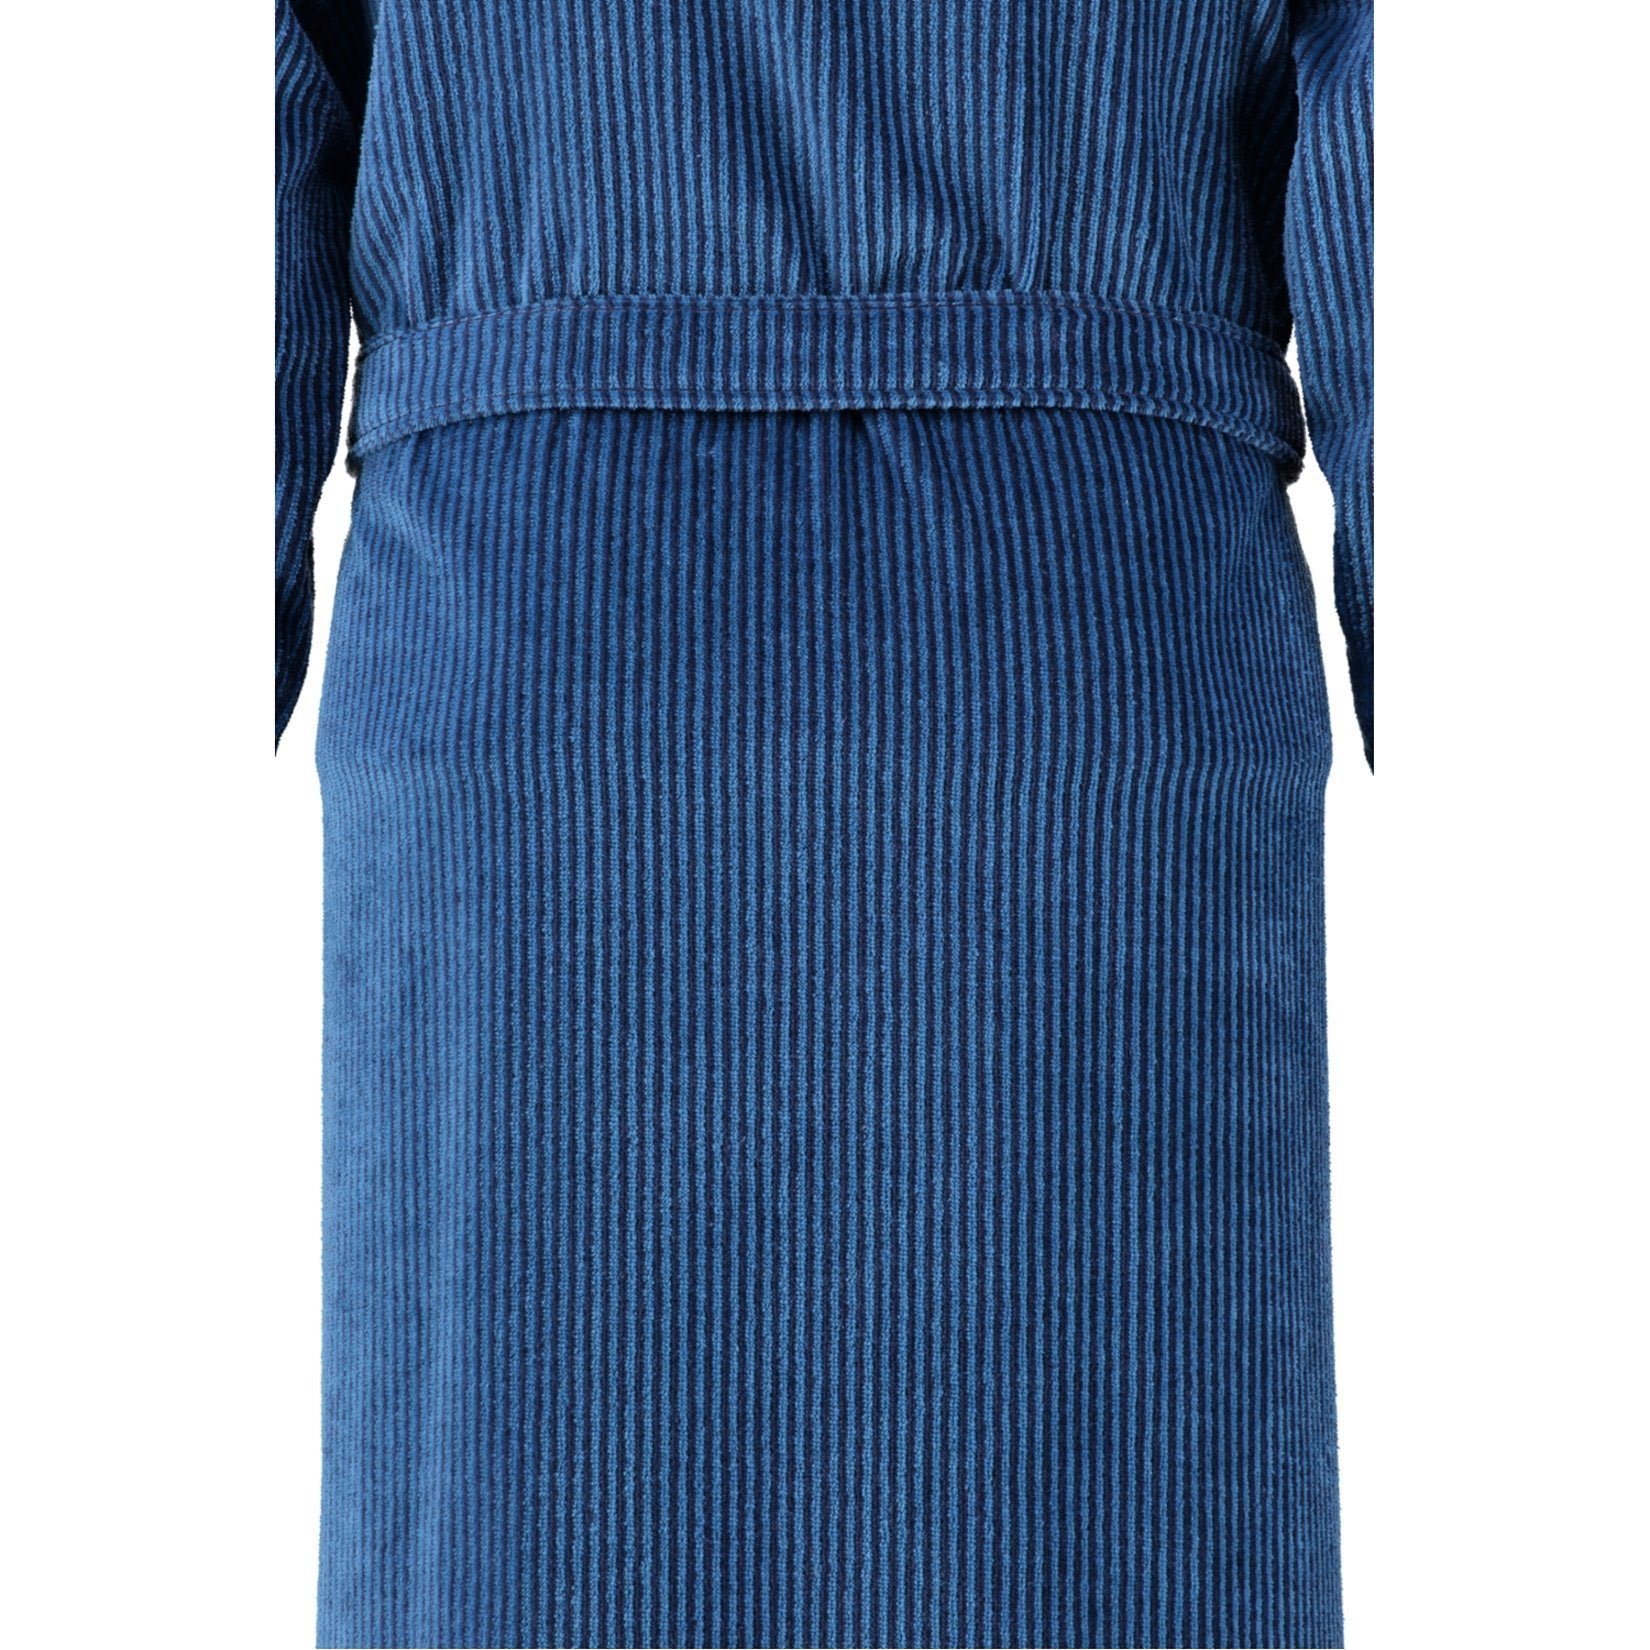 Gürtel, blau Kimono-Kragen, Walkvelours, Form Cawö Kimono 5840, Langform, Herrenbademantel